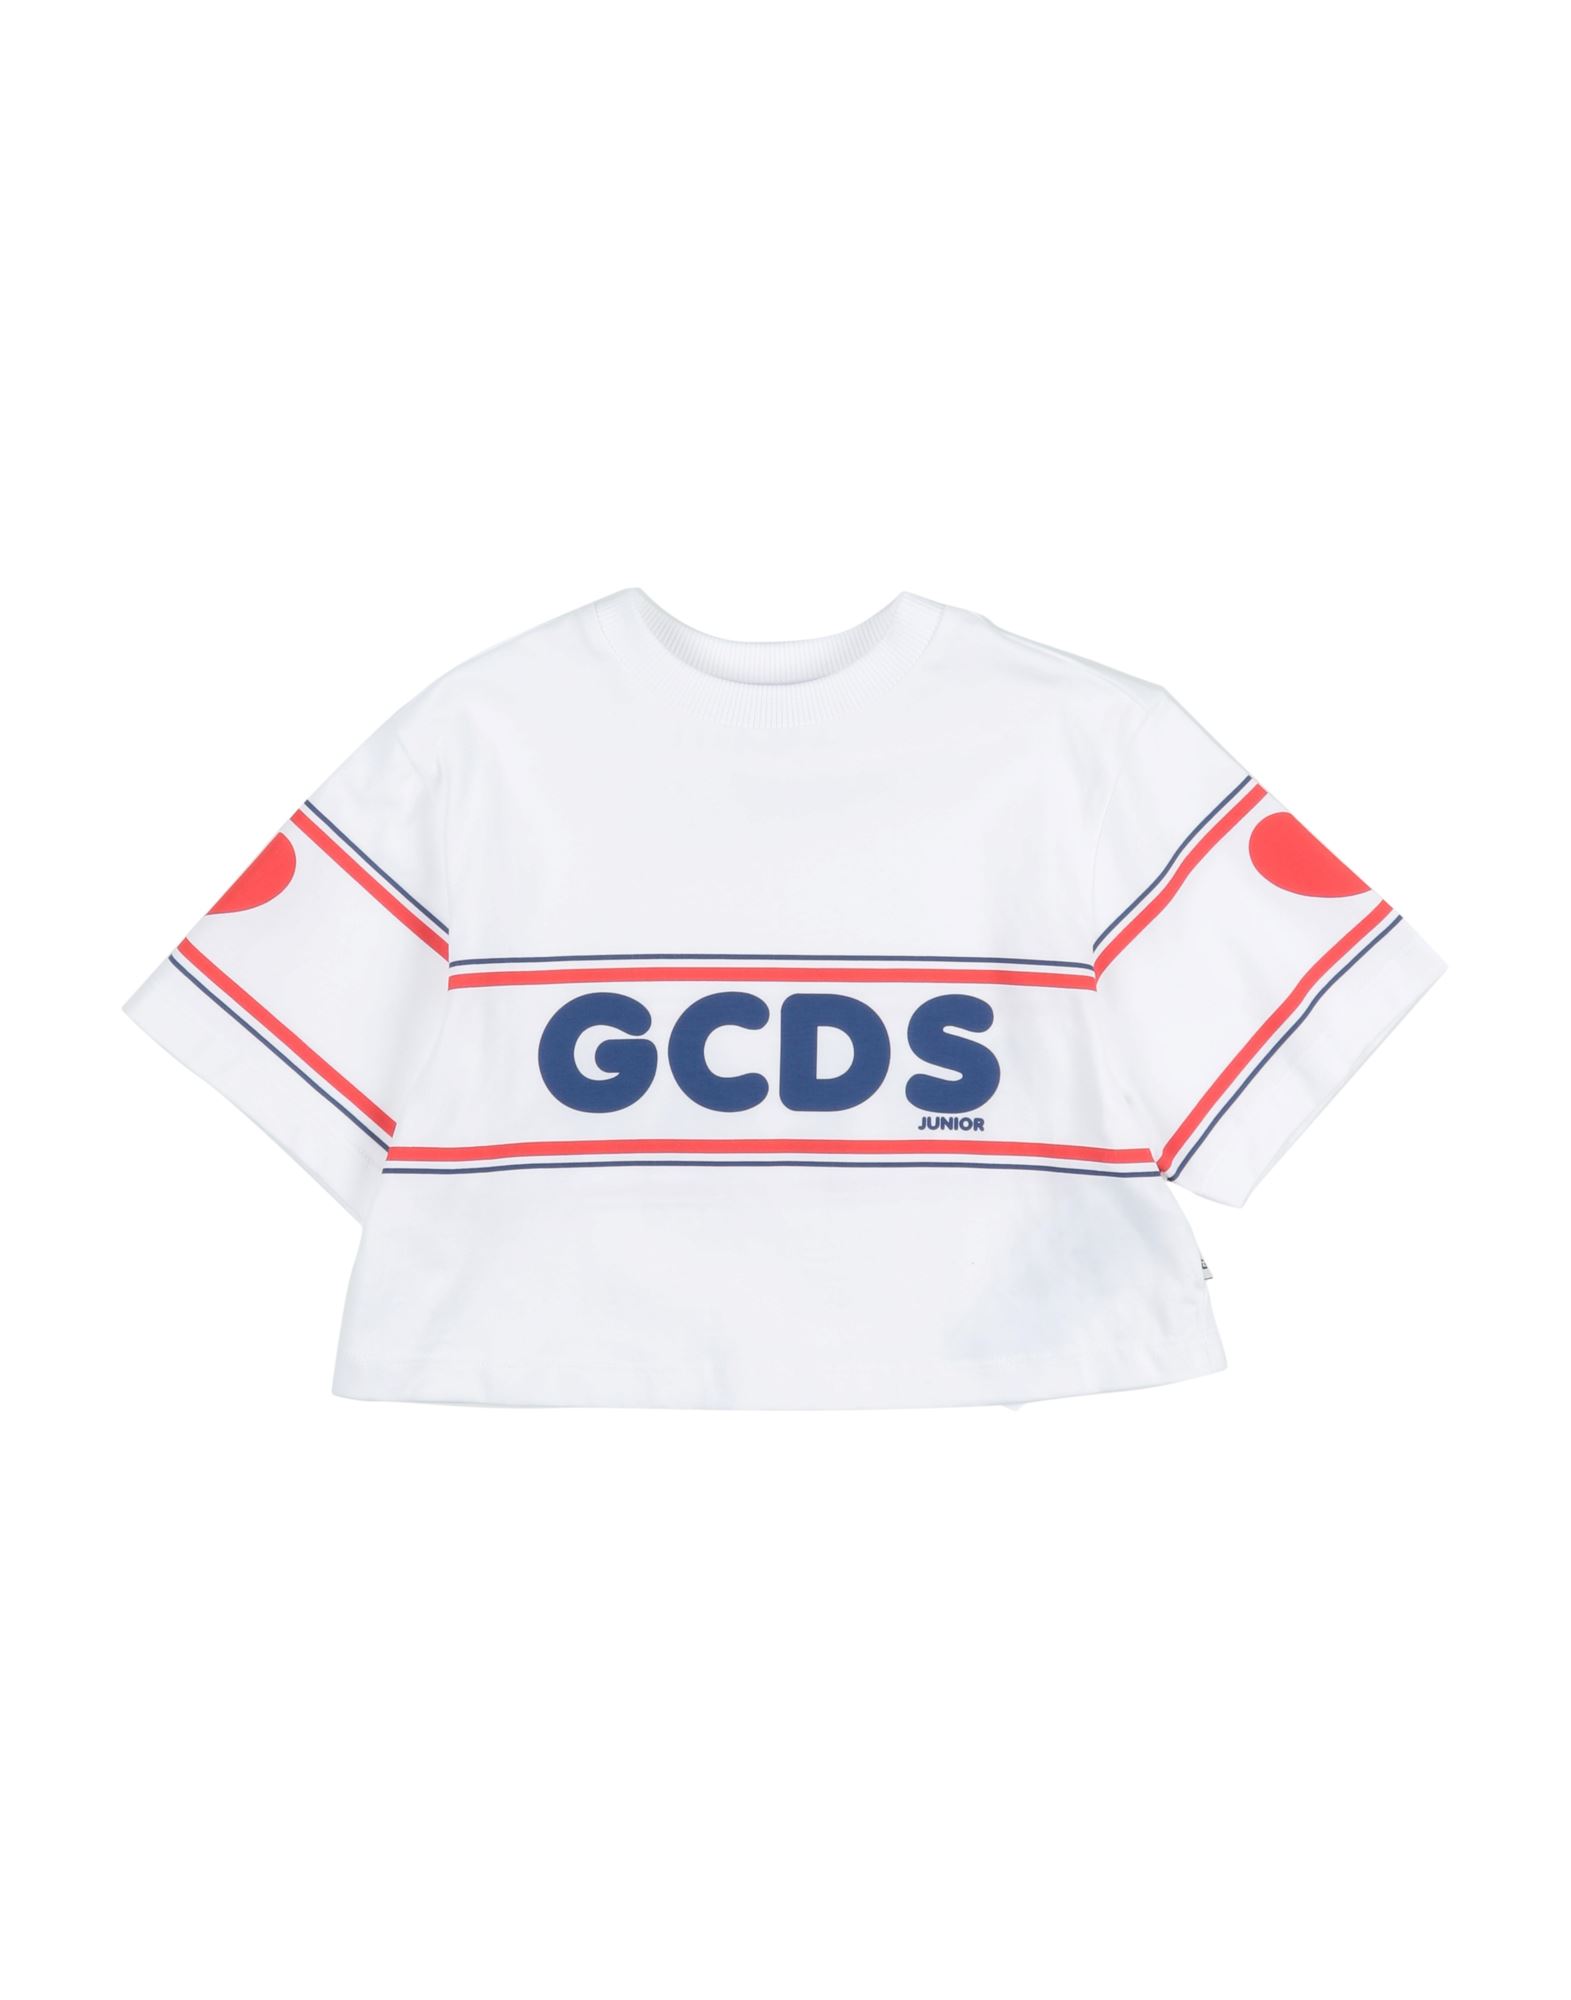 GCDS T-SHIRTS